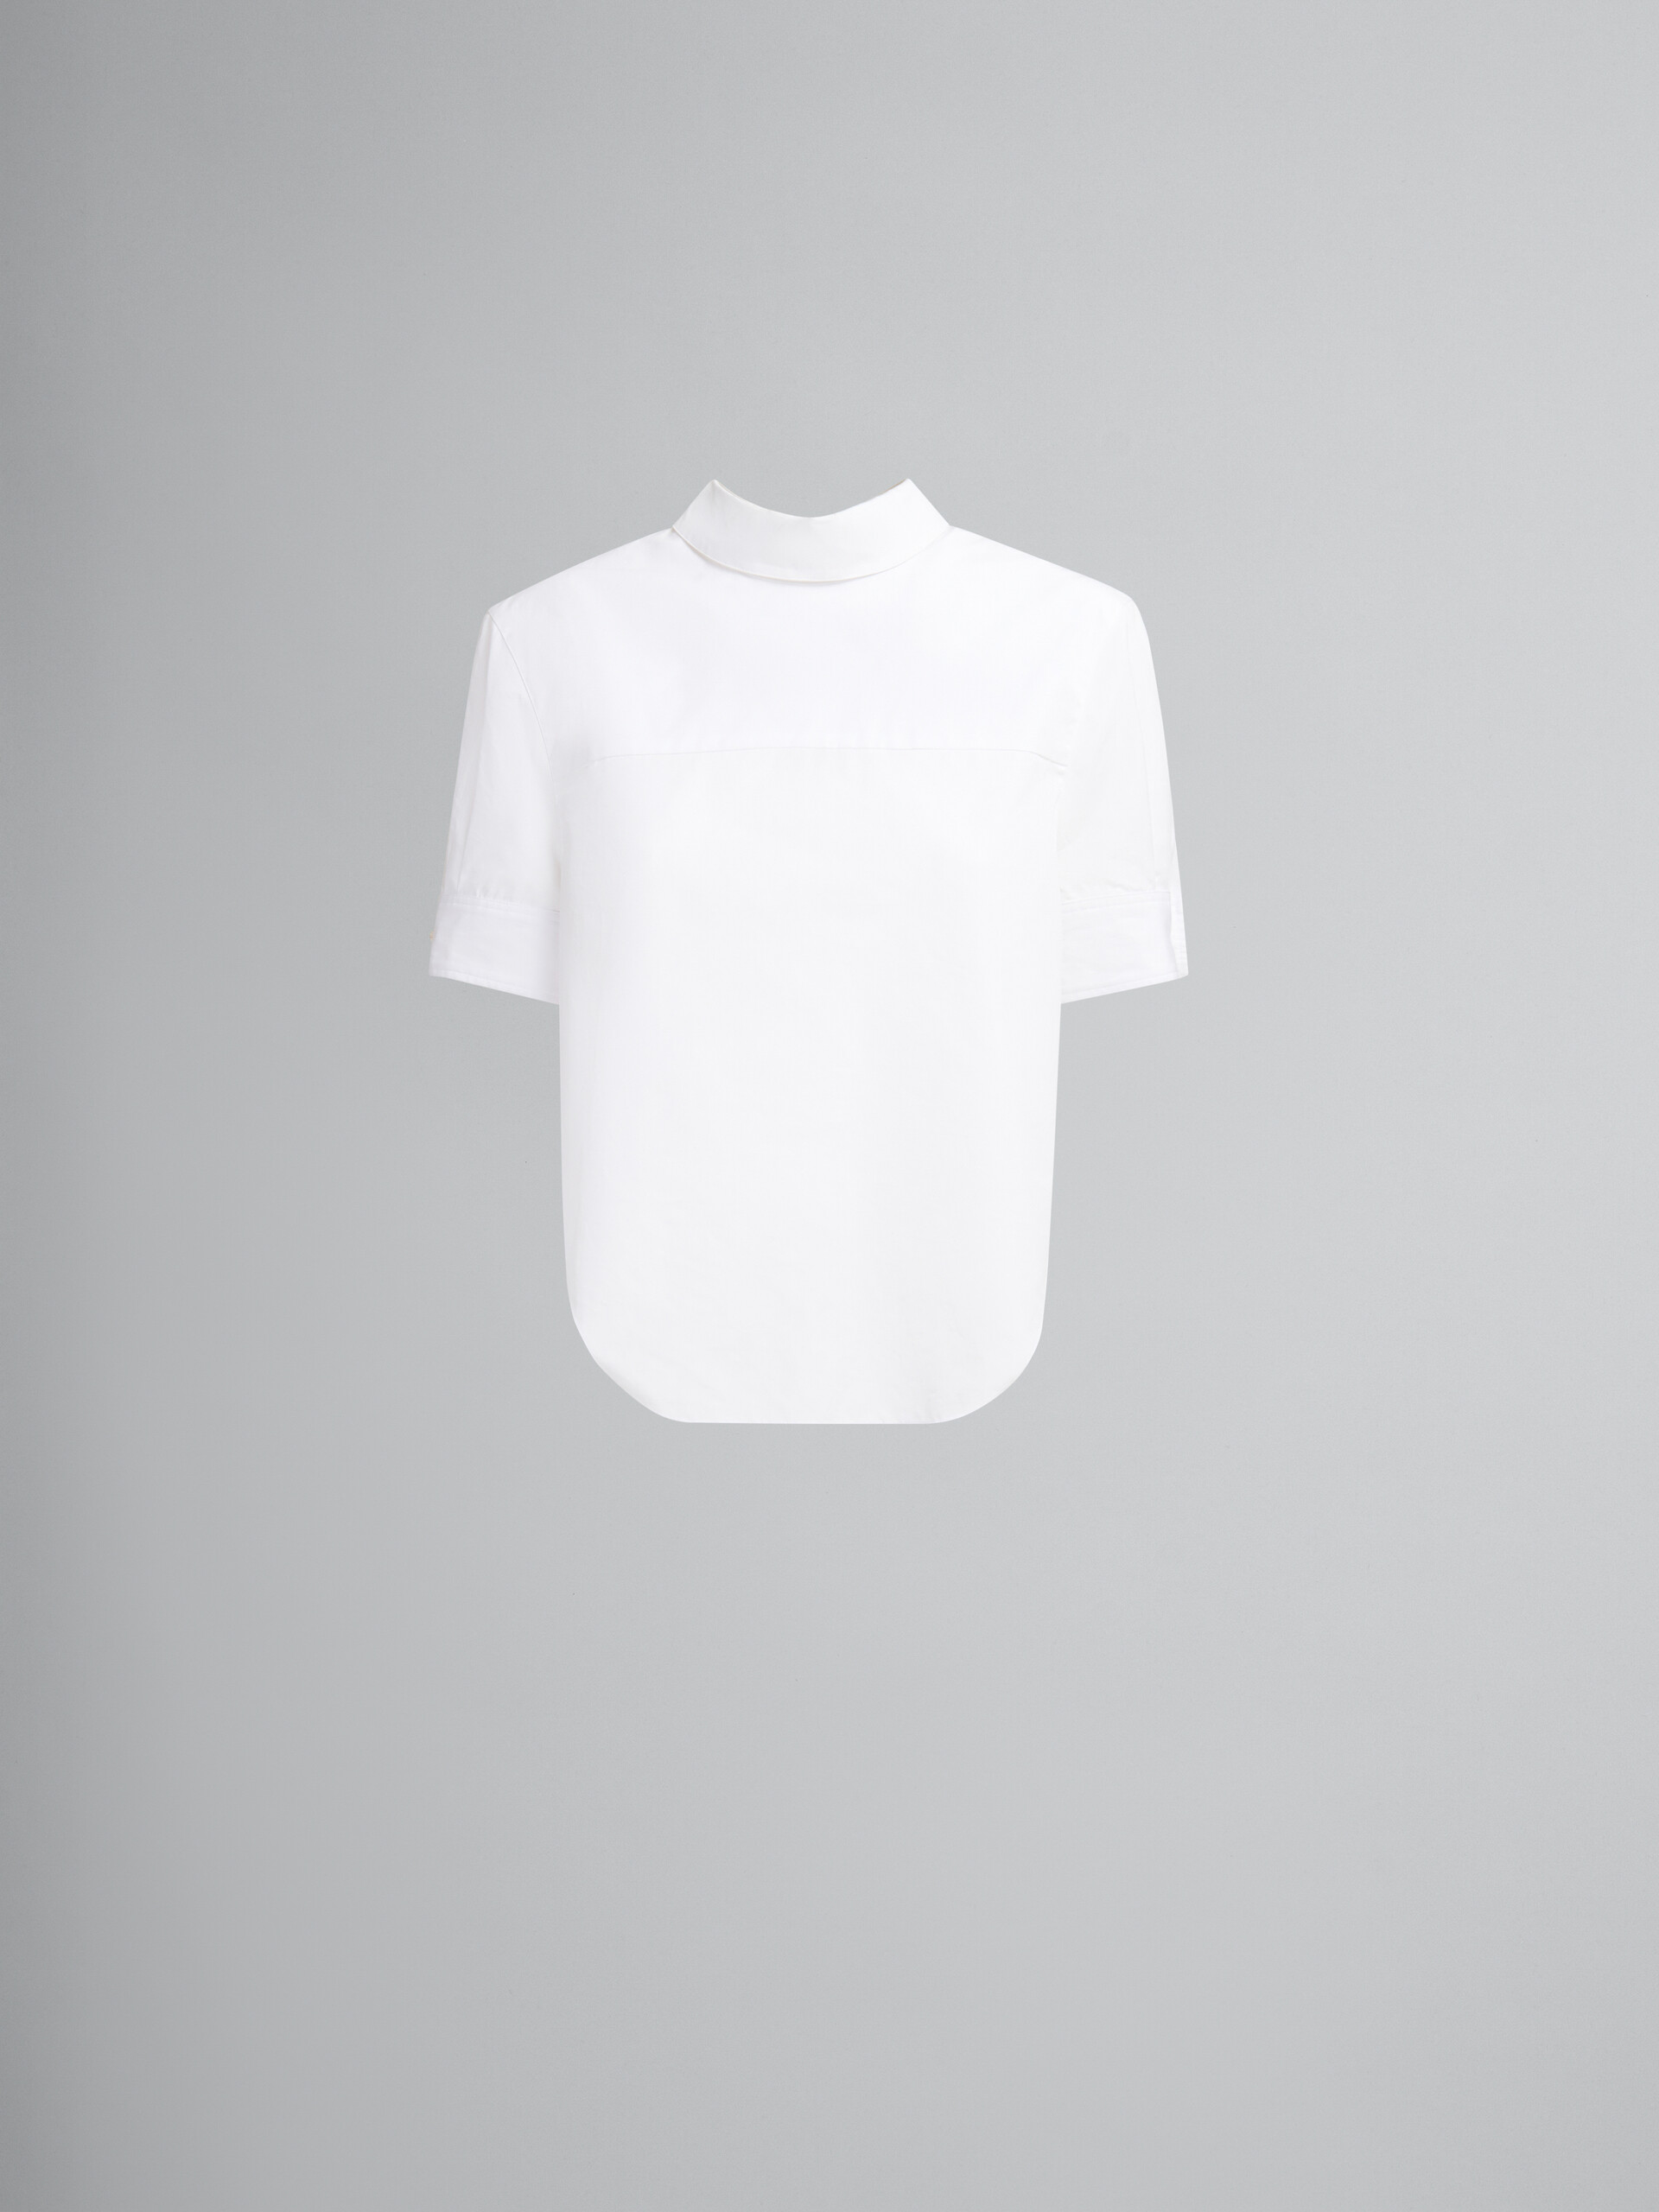 오가닉 화이트 포플린 백워드 셔츠 - 셔츠 - Image 1